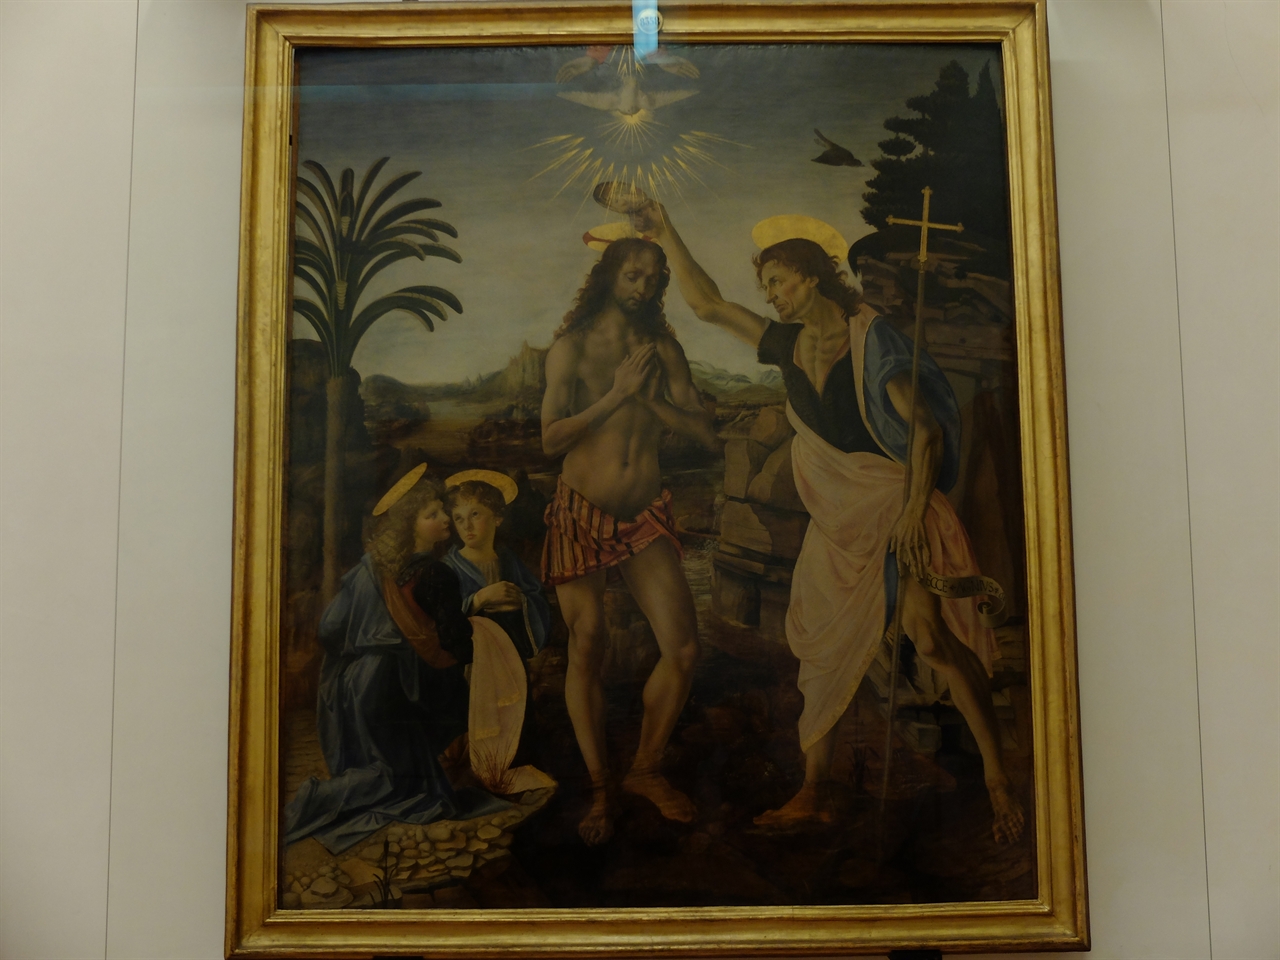 베록키오, 레오나르도 다빈치, '세례받는 그리스도', 피렌체 우피치 미술관. 스승인 베록키오가 주요 인물인 예수와 성 세례 요한을 그렸고 10대의 제자인 다빈치가 왼쪽의 천사들과 배경을 그렸습니다.